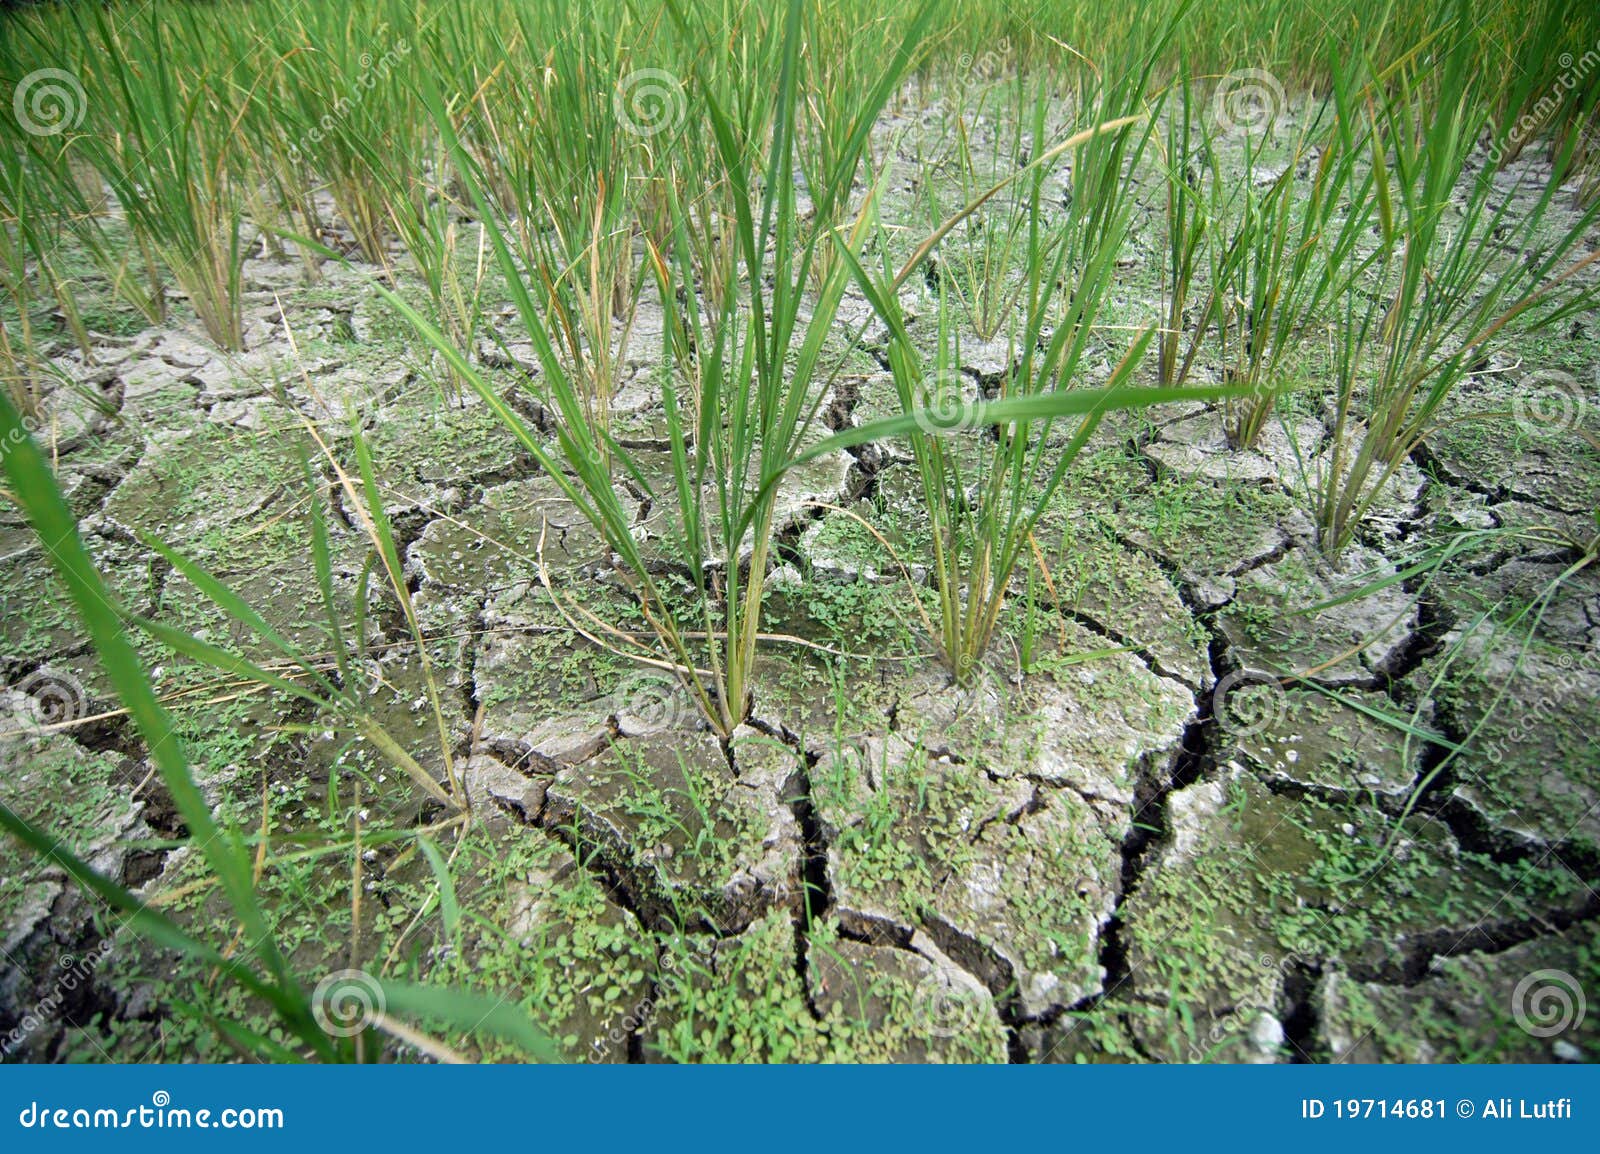 损坏的增长的工厂米土壤. 损坏的导致的情况庄稼中断下来甚而古怪的故障农夫去不是增长的增长被削弱的缺乏工厂工厂土壤对是水天气的雨米